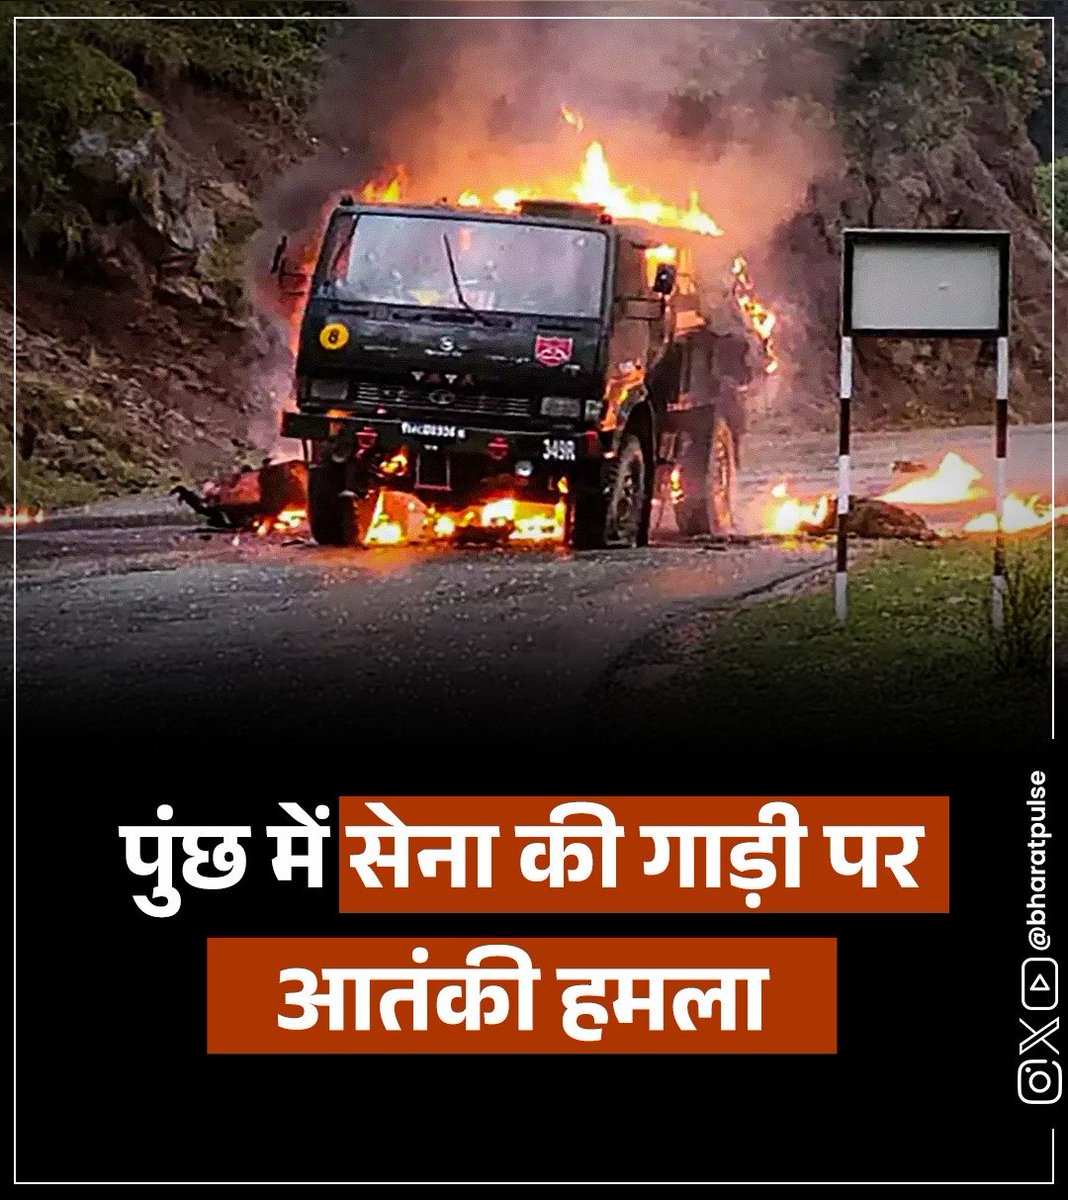 सेना की गाड़ियों पर आतंकी हमले चुनावो में ही क्यों होते है...??
हे भगवान हमारे सेनिको की रक्षा करना...🥺🙏
#IndianArmy 
#army
#jayhind